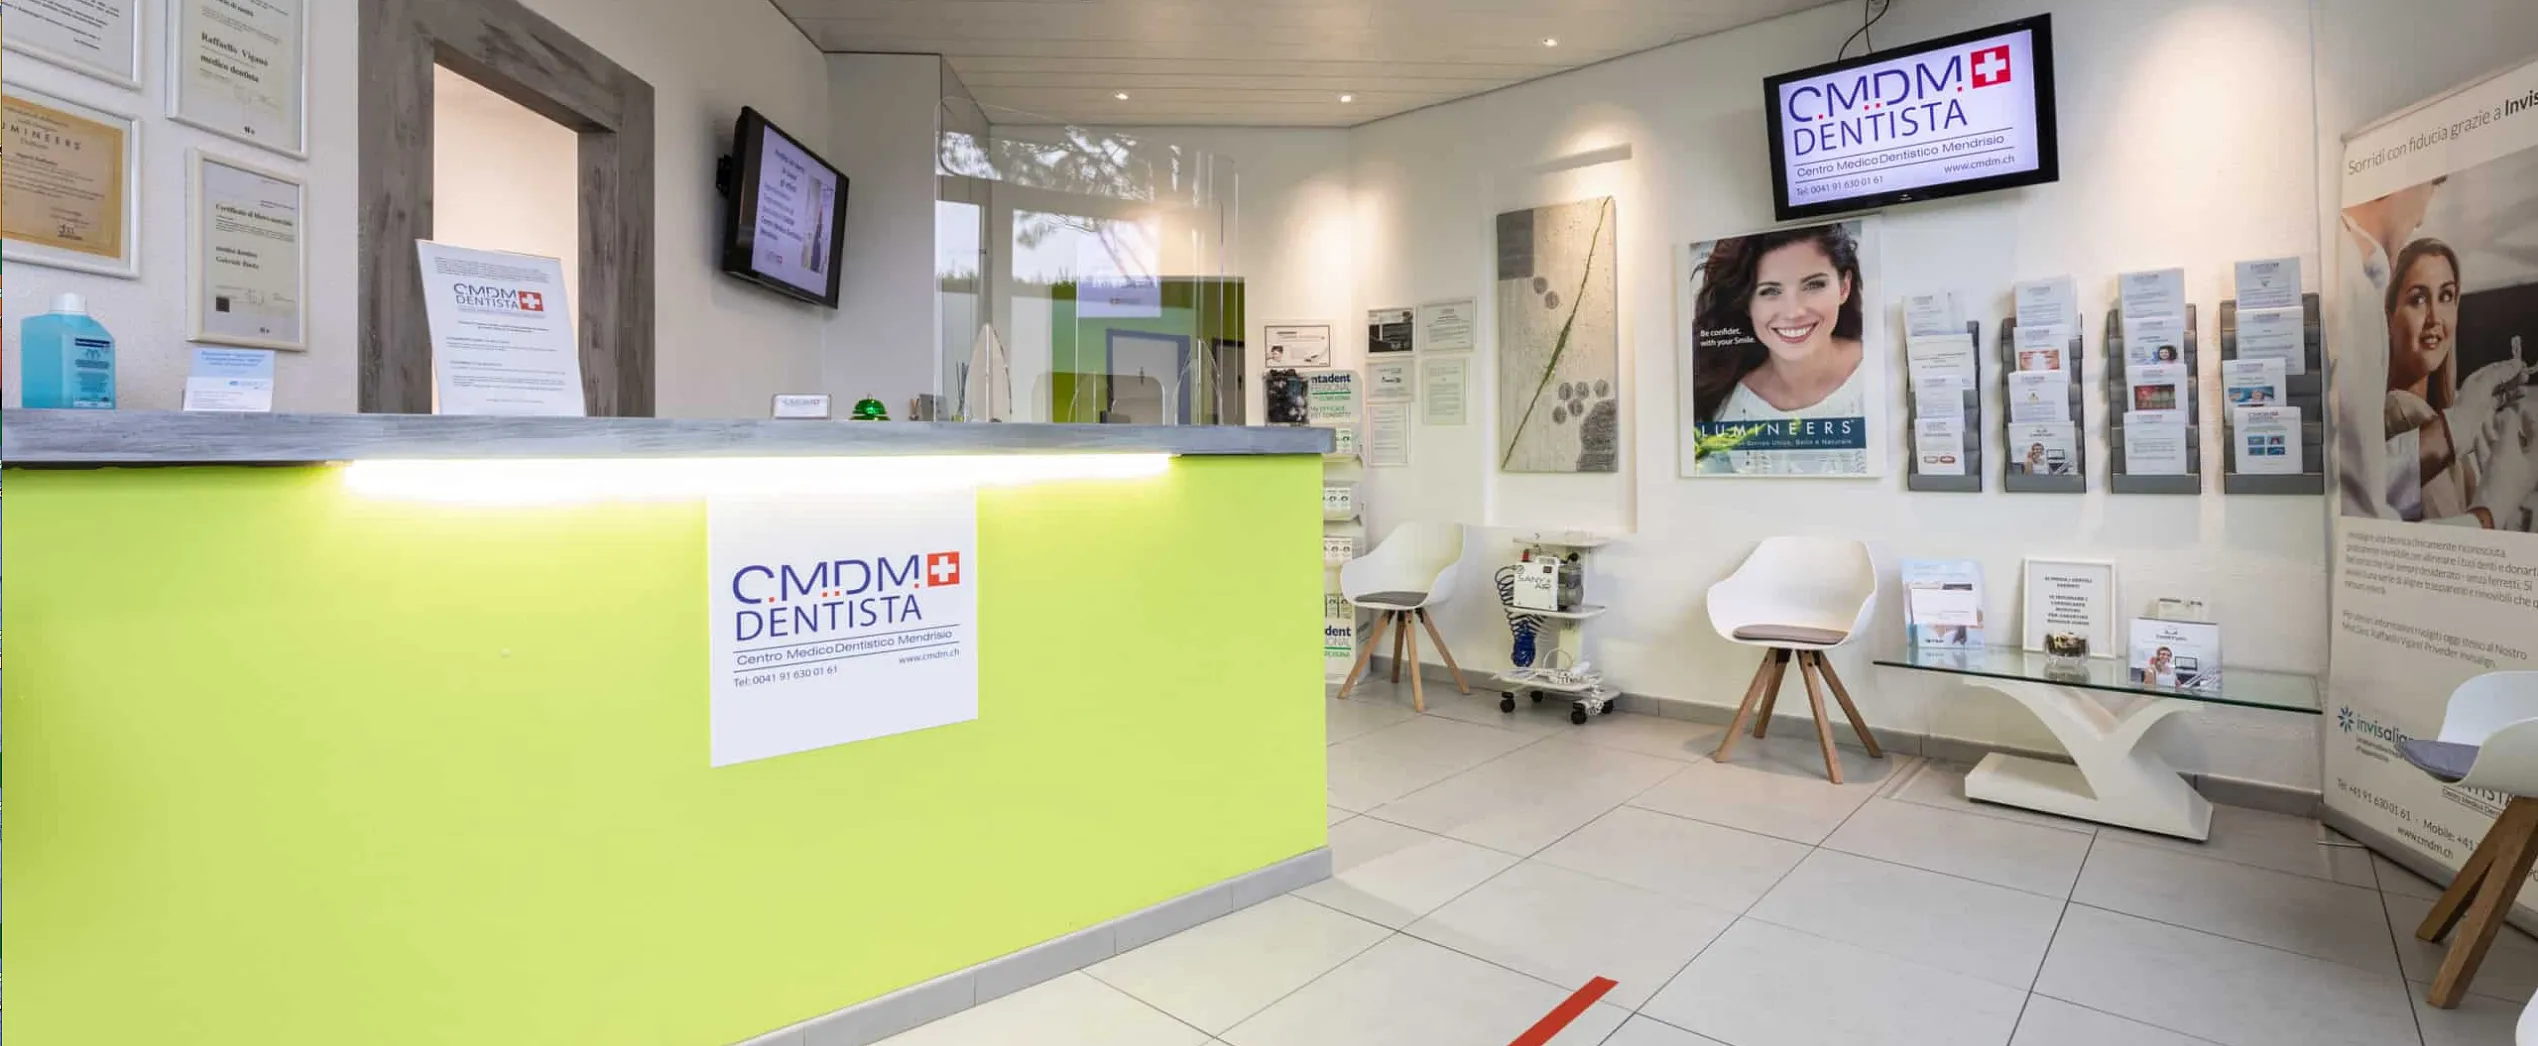 CMDM - Centro Medico Dentistico Mendrisio